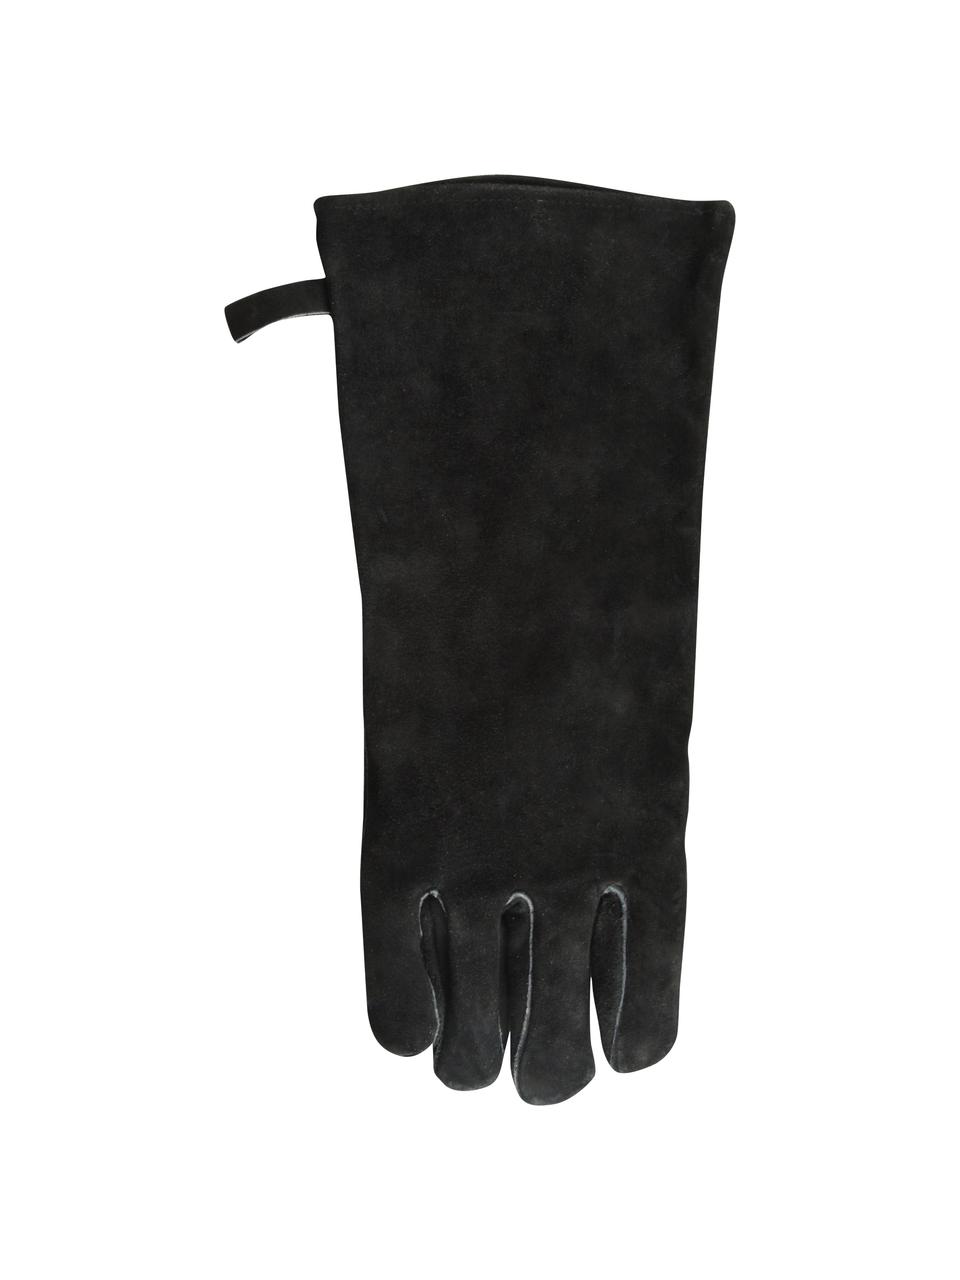 Grill-Handschuh Protect, 65% Rindspaltleder, 25% Polyester, 10% Baumwolle, Schwarz, B 19 x H 41 cm